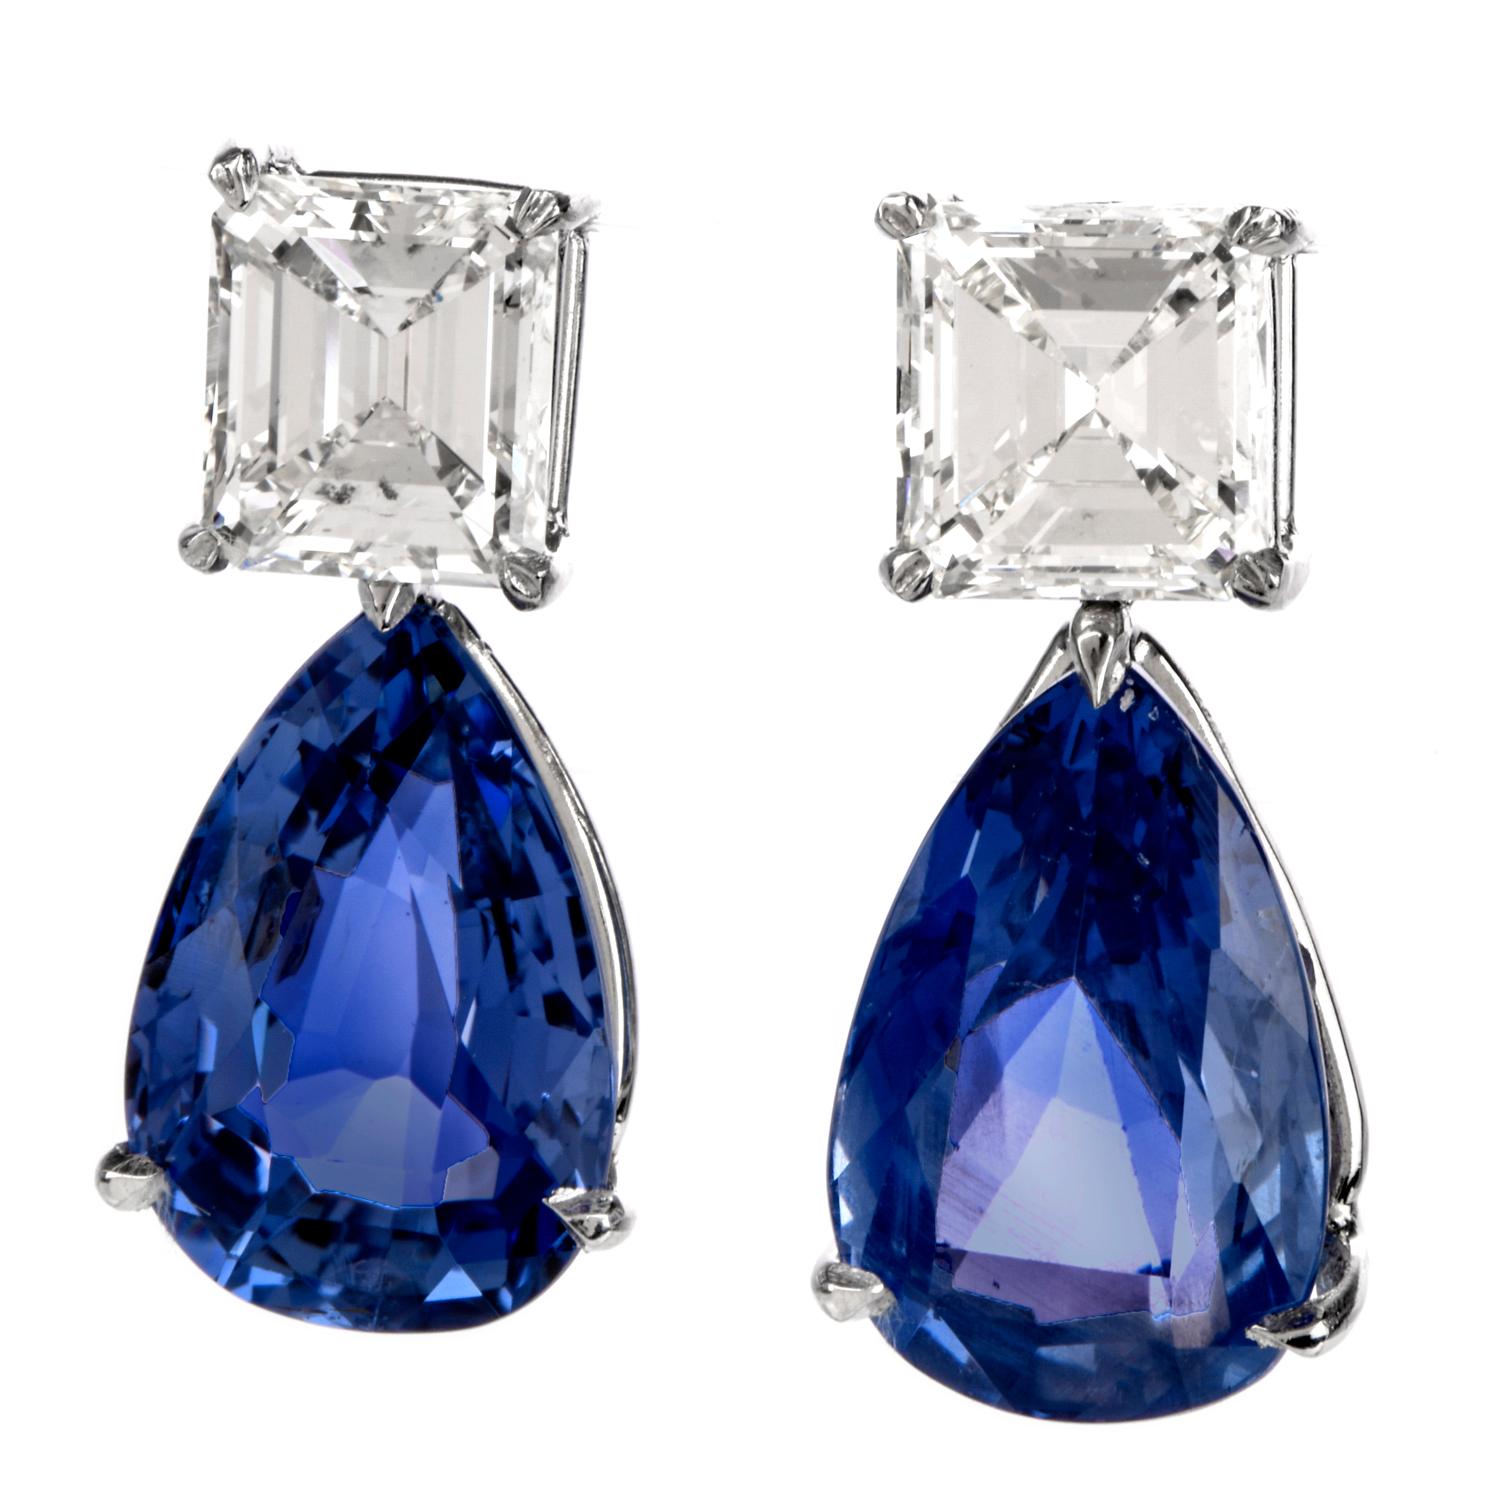 Diese atemberaubenden Ohrringe aus natürlichem blauem Saphir und Diamanten sind aus massivem Platin handgefertigt, wiegen 10 Gramm und sind 24 mm lang und 11 mm breit. Exposition eines Paares von Zinken gesetzt, Birne Brillantschliff natürlichen